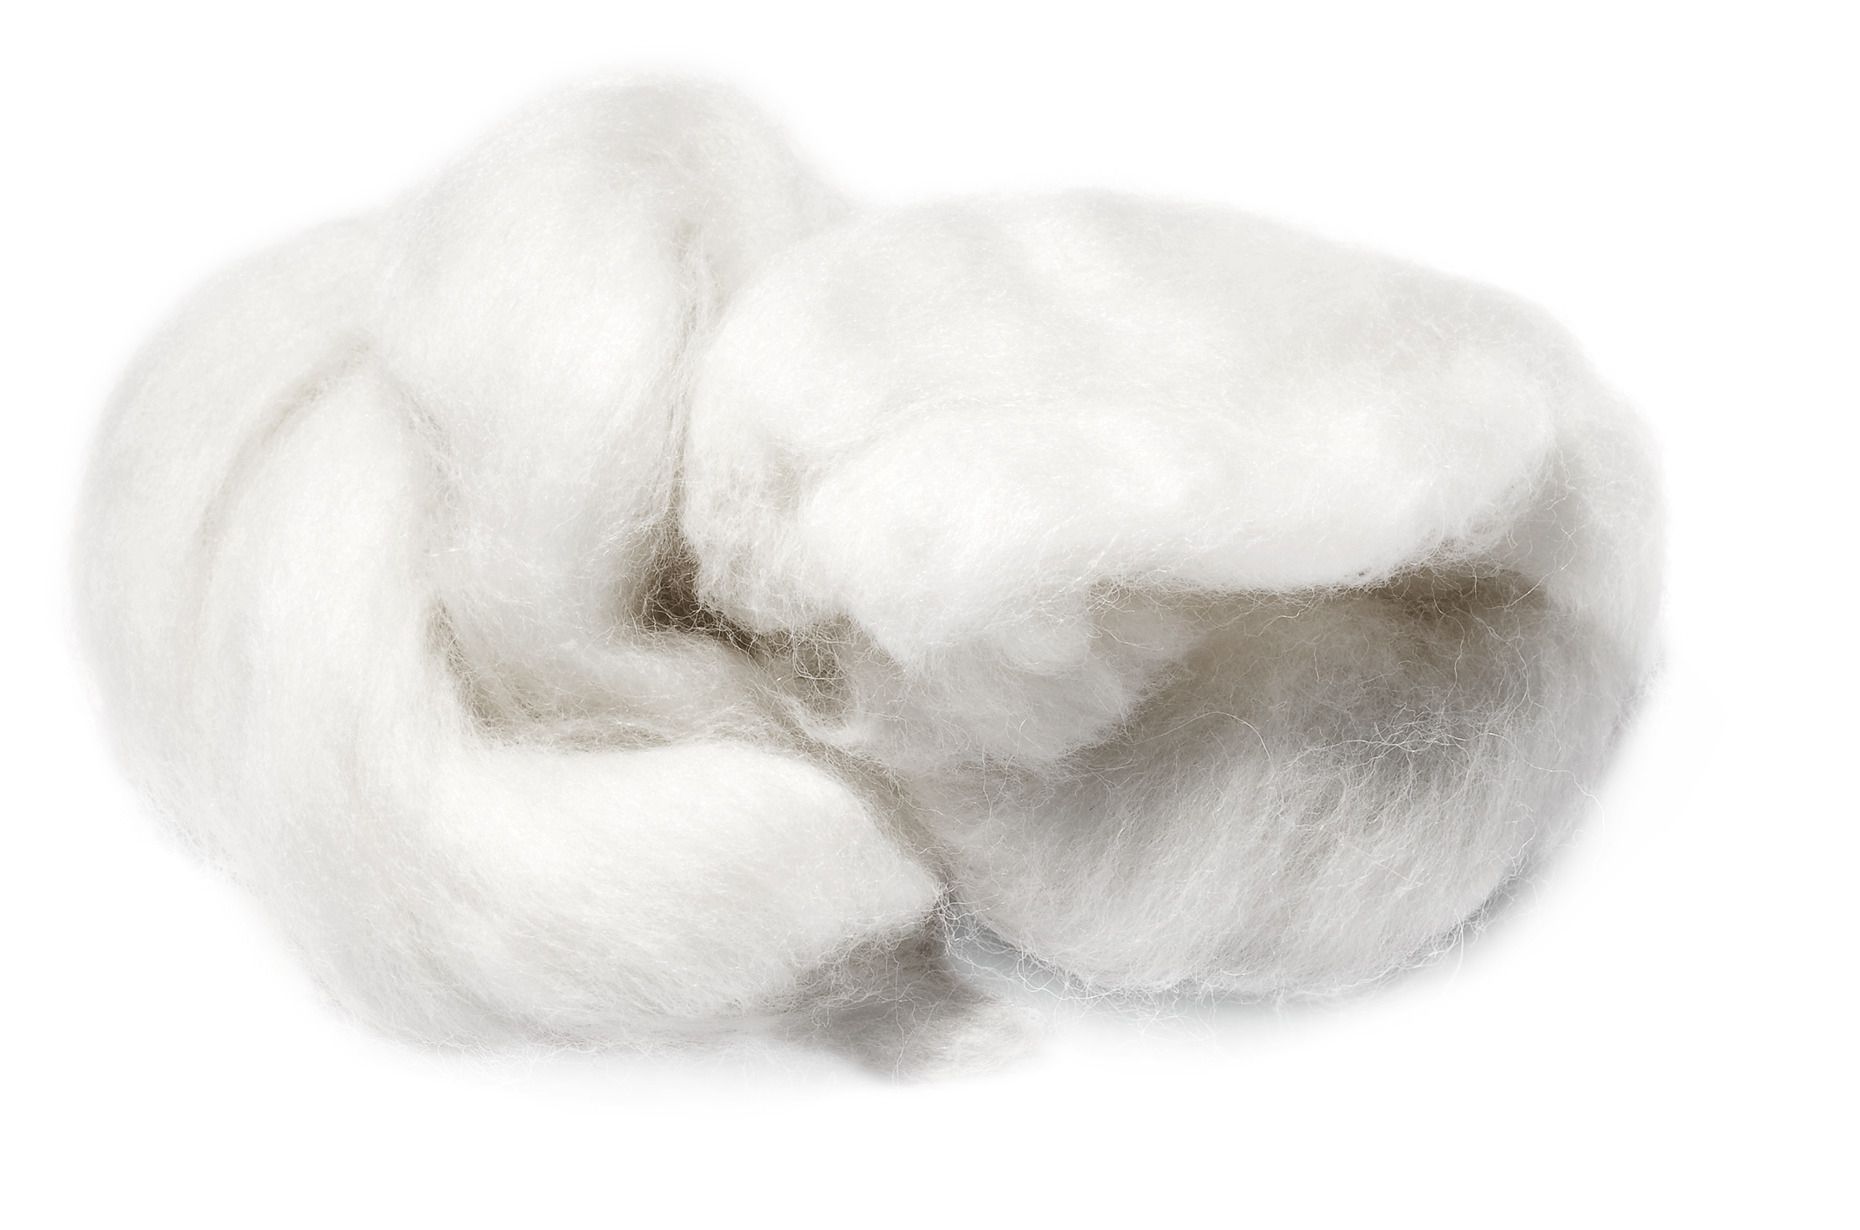 SANTA FLEX  Orig. Australische Lammwolle 100 g